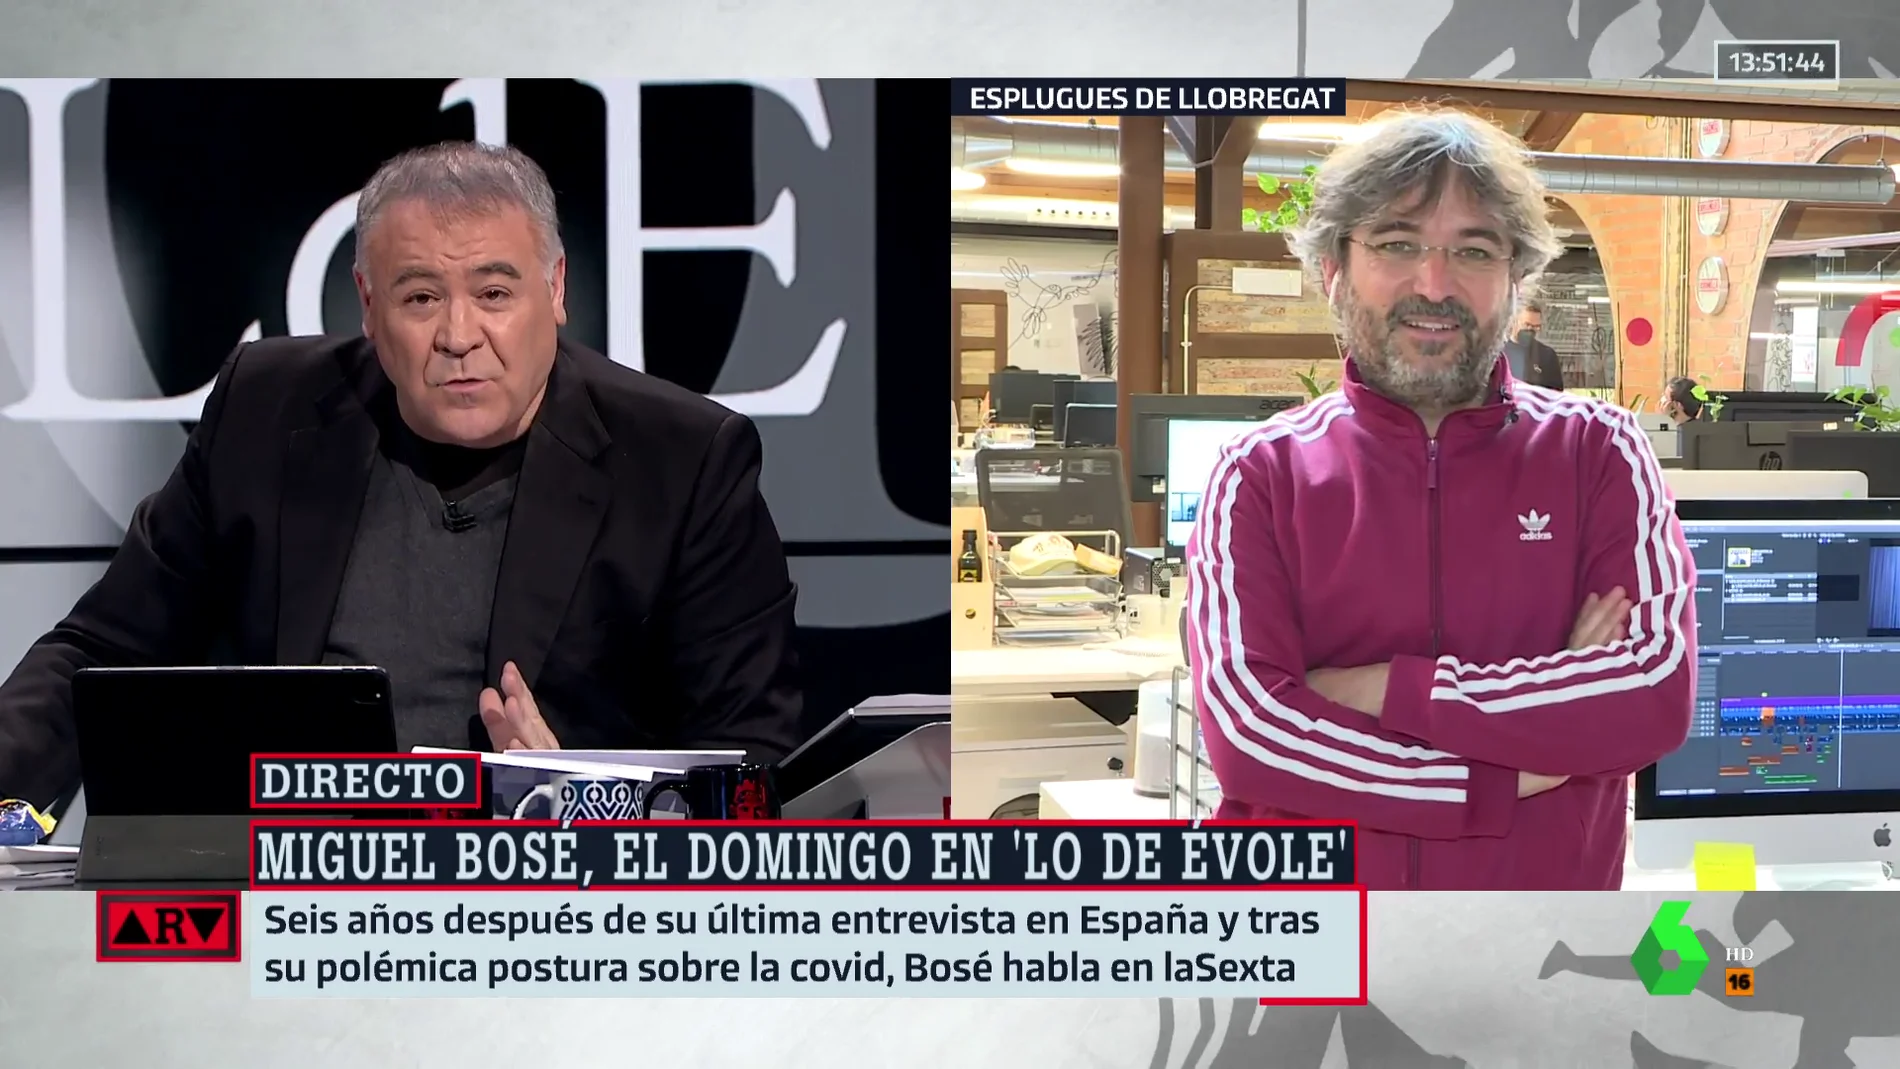 Évole responde a los que critican la entrevista a Miguel Bosé: "Todos los medios difundieron sus vídeos, ahora ¿qué problema hay?"